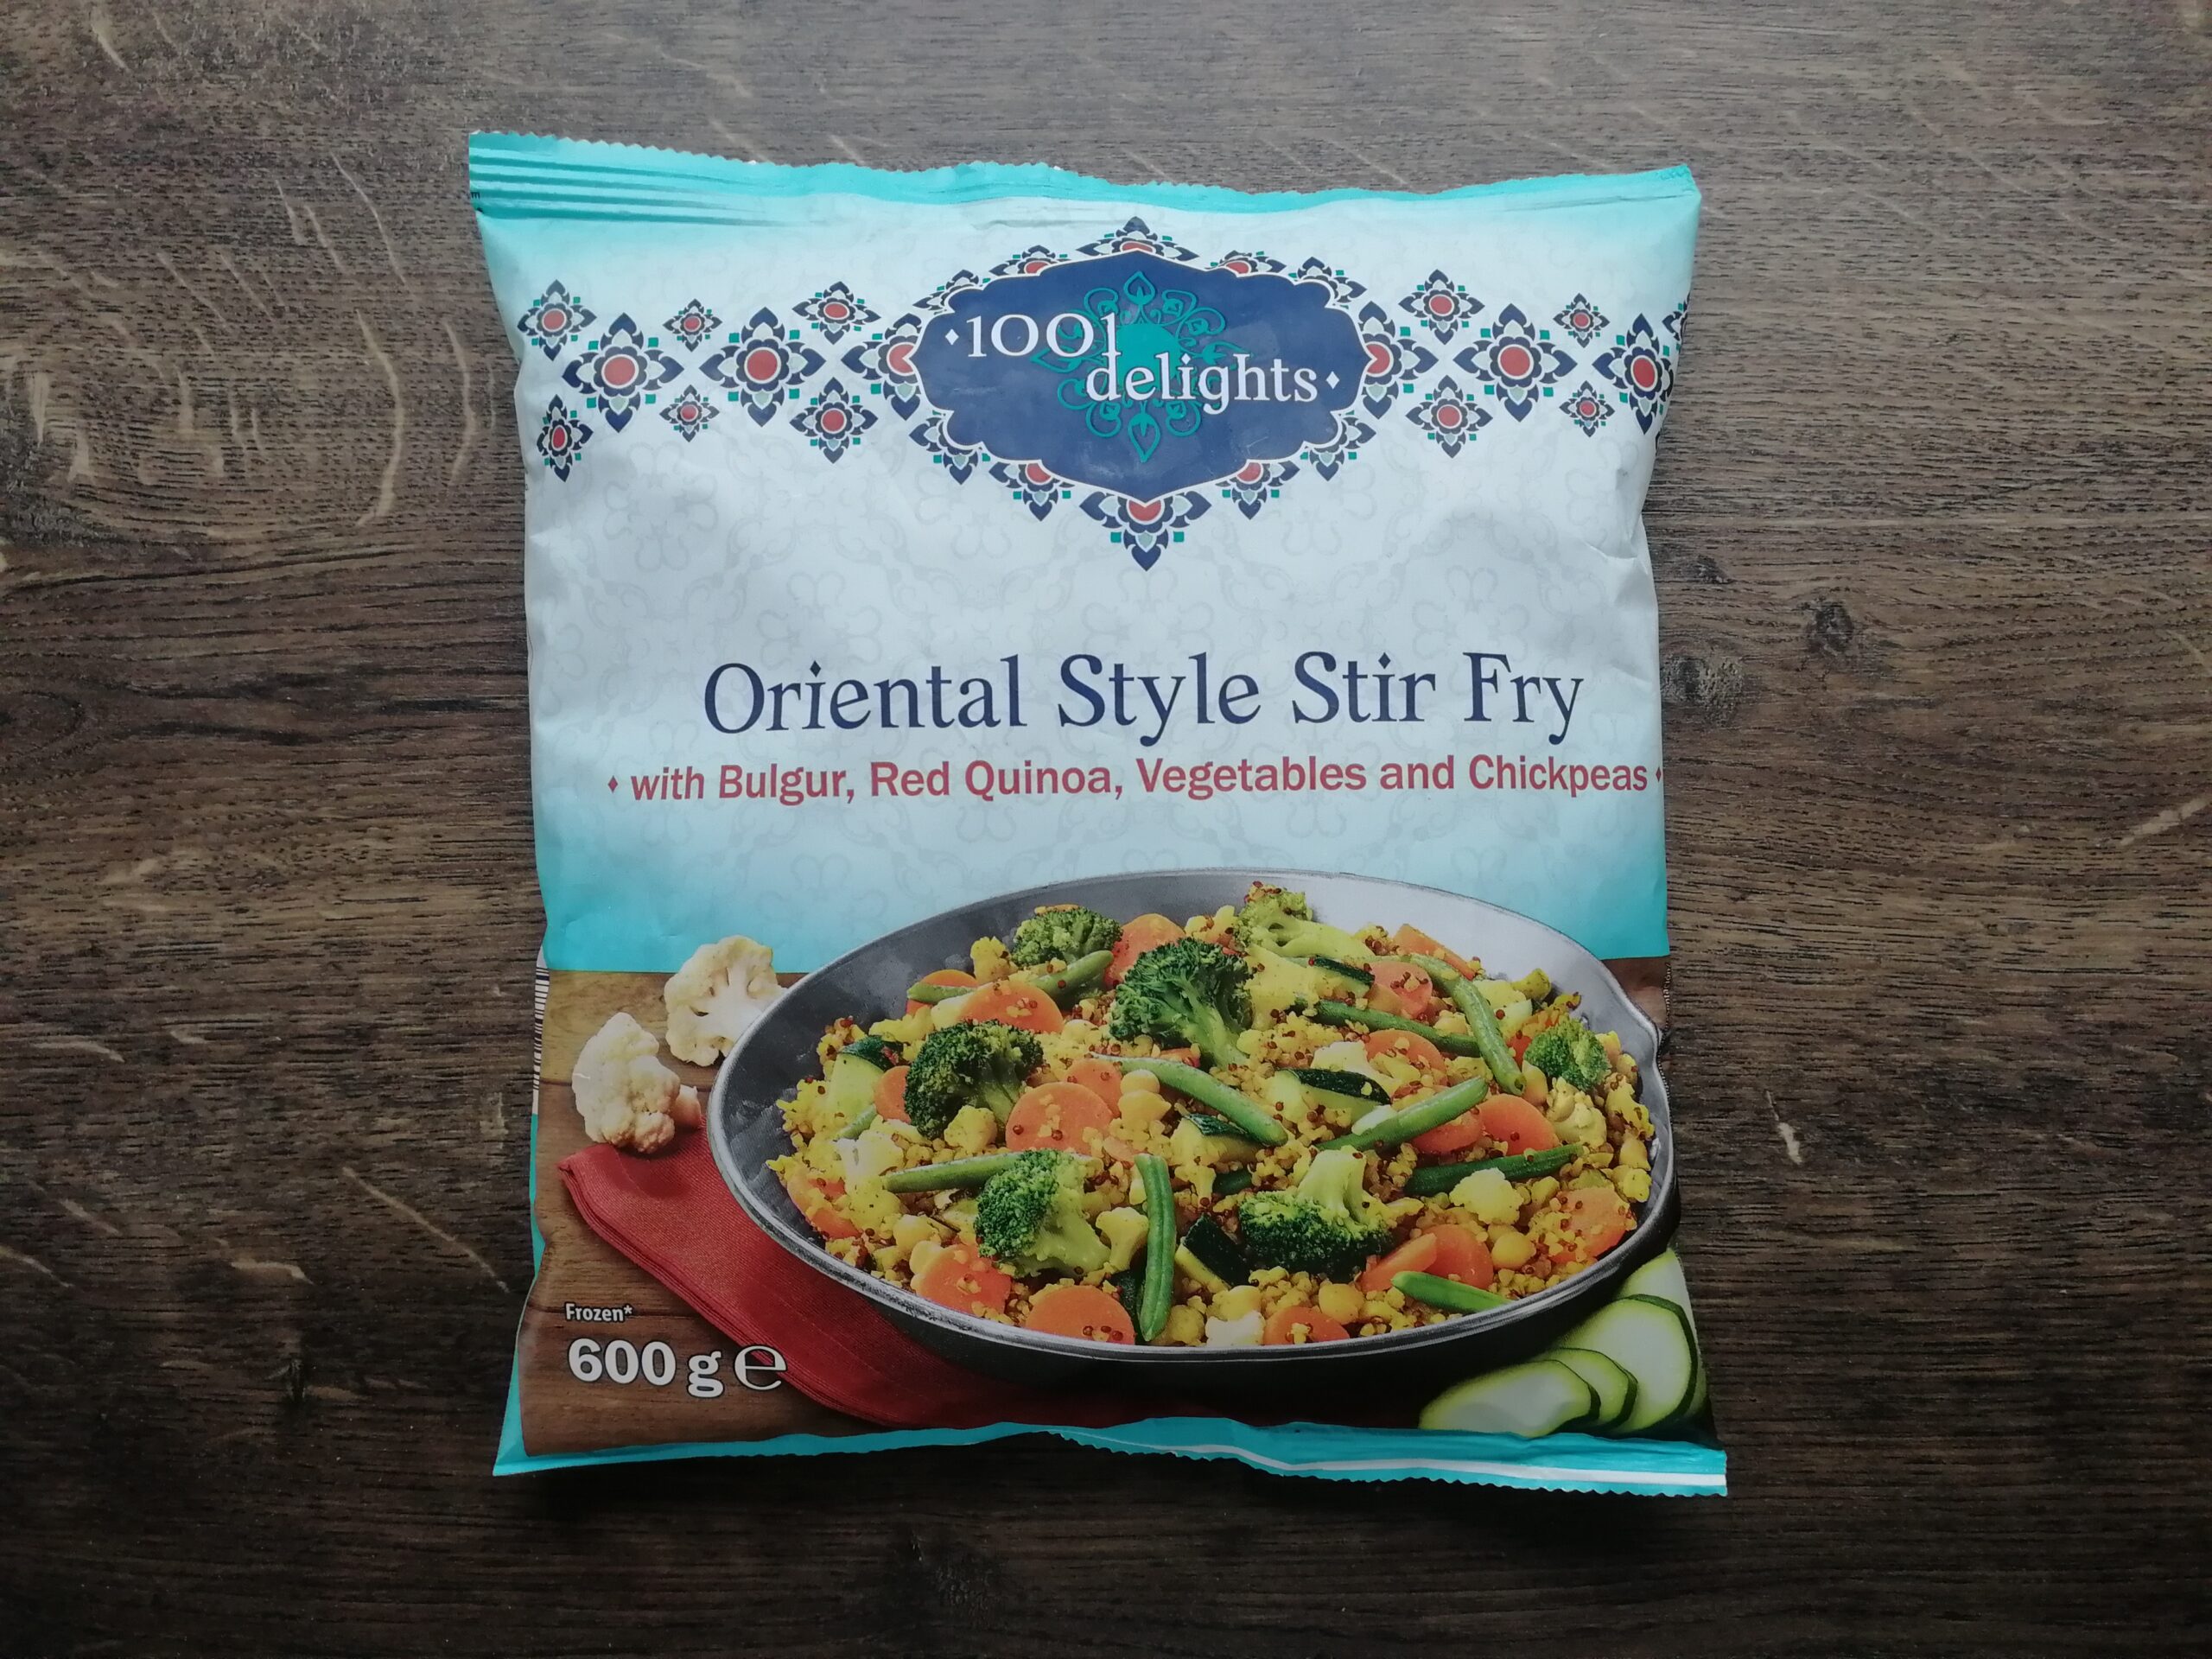 Oriental Style Stir Fry fra 1001 delights i Lidl – Alsidig vegetarisk færdigret